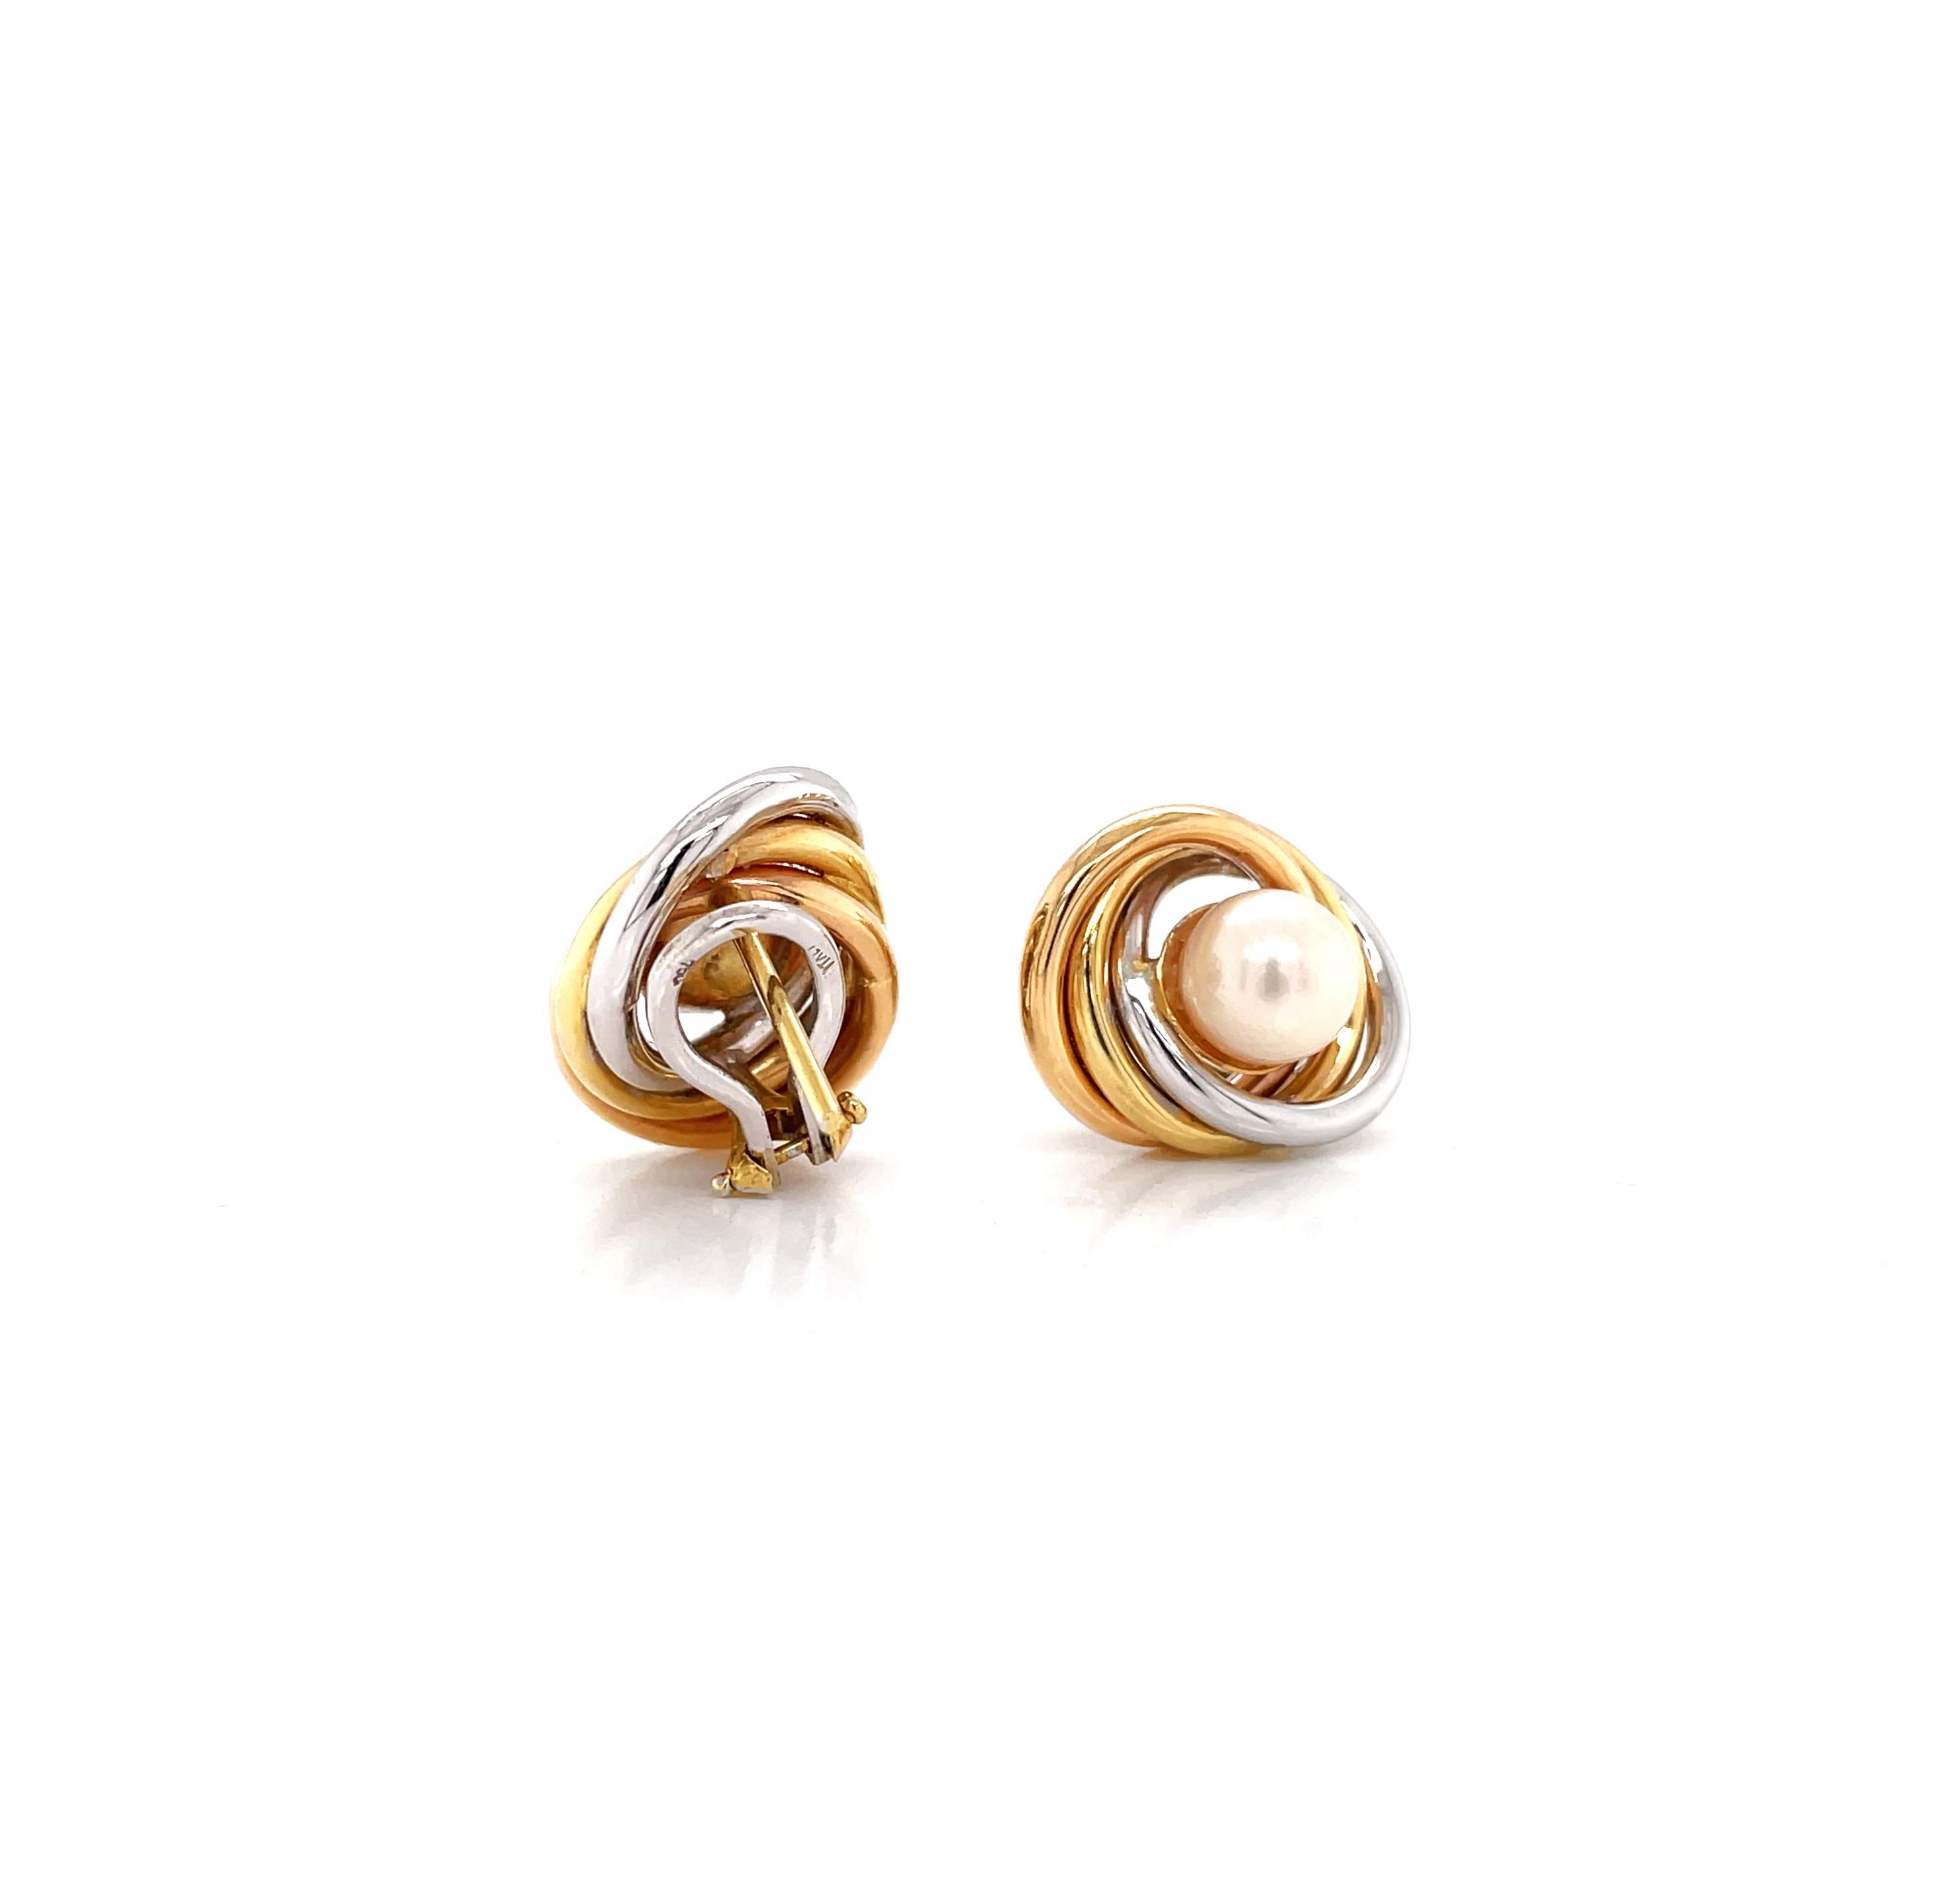 18 carat earrings